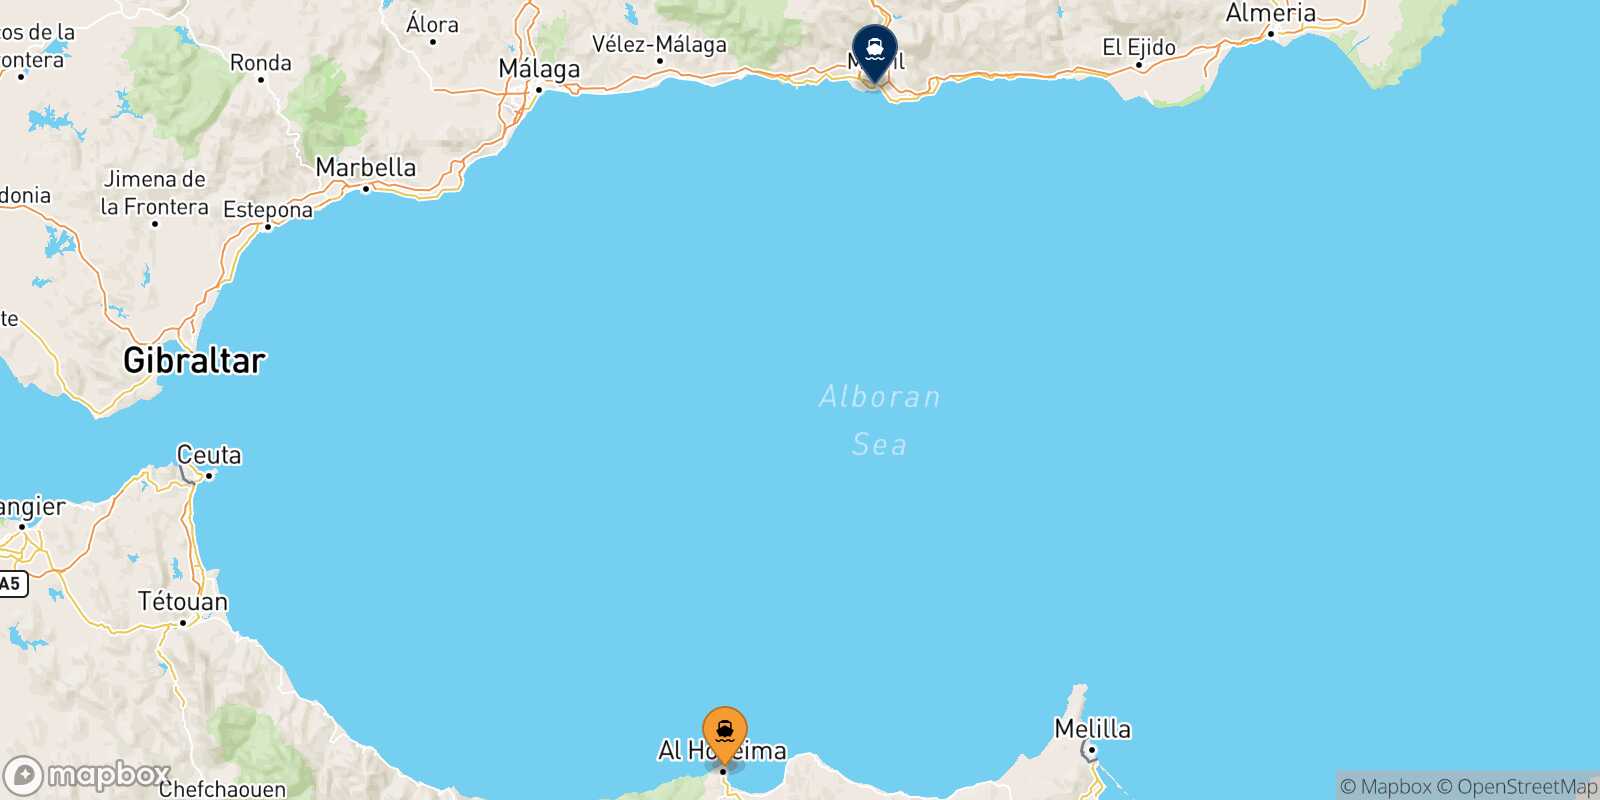 Mappa delle destinazioni raggiungibili da Al Hoceima